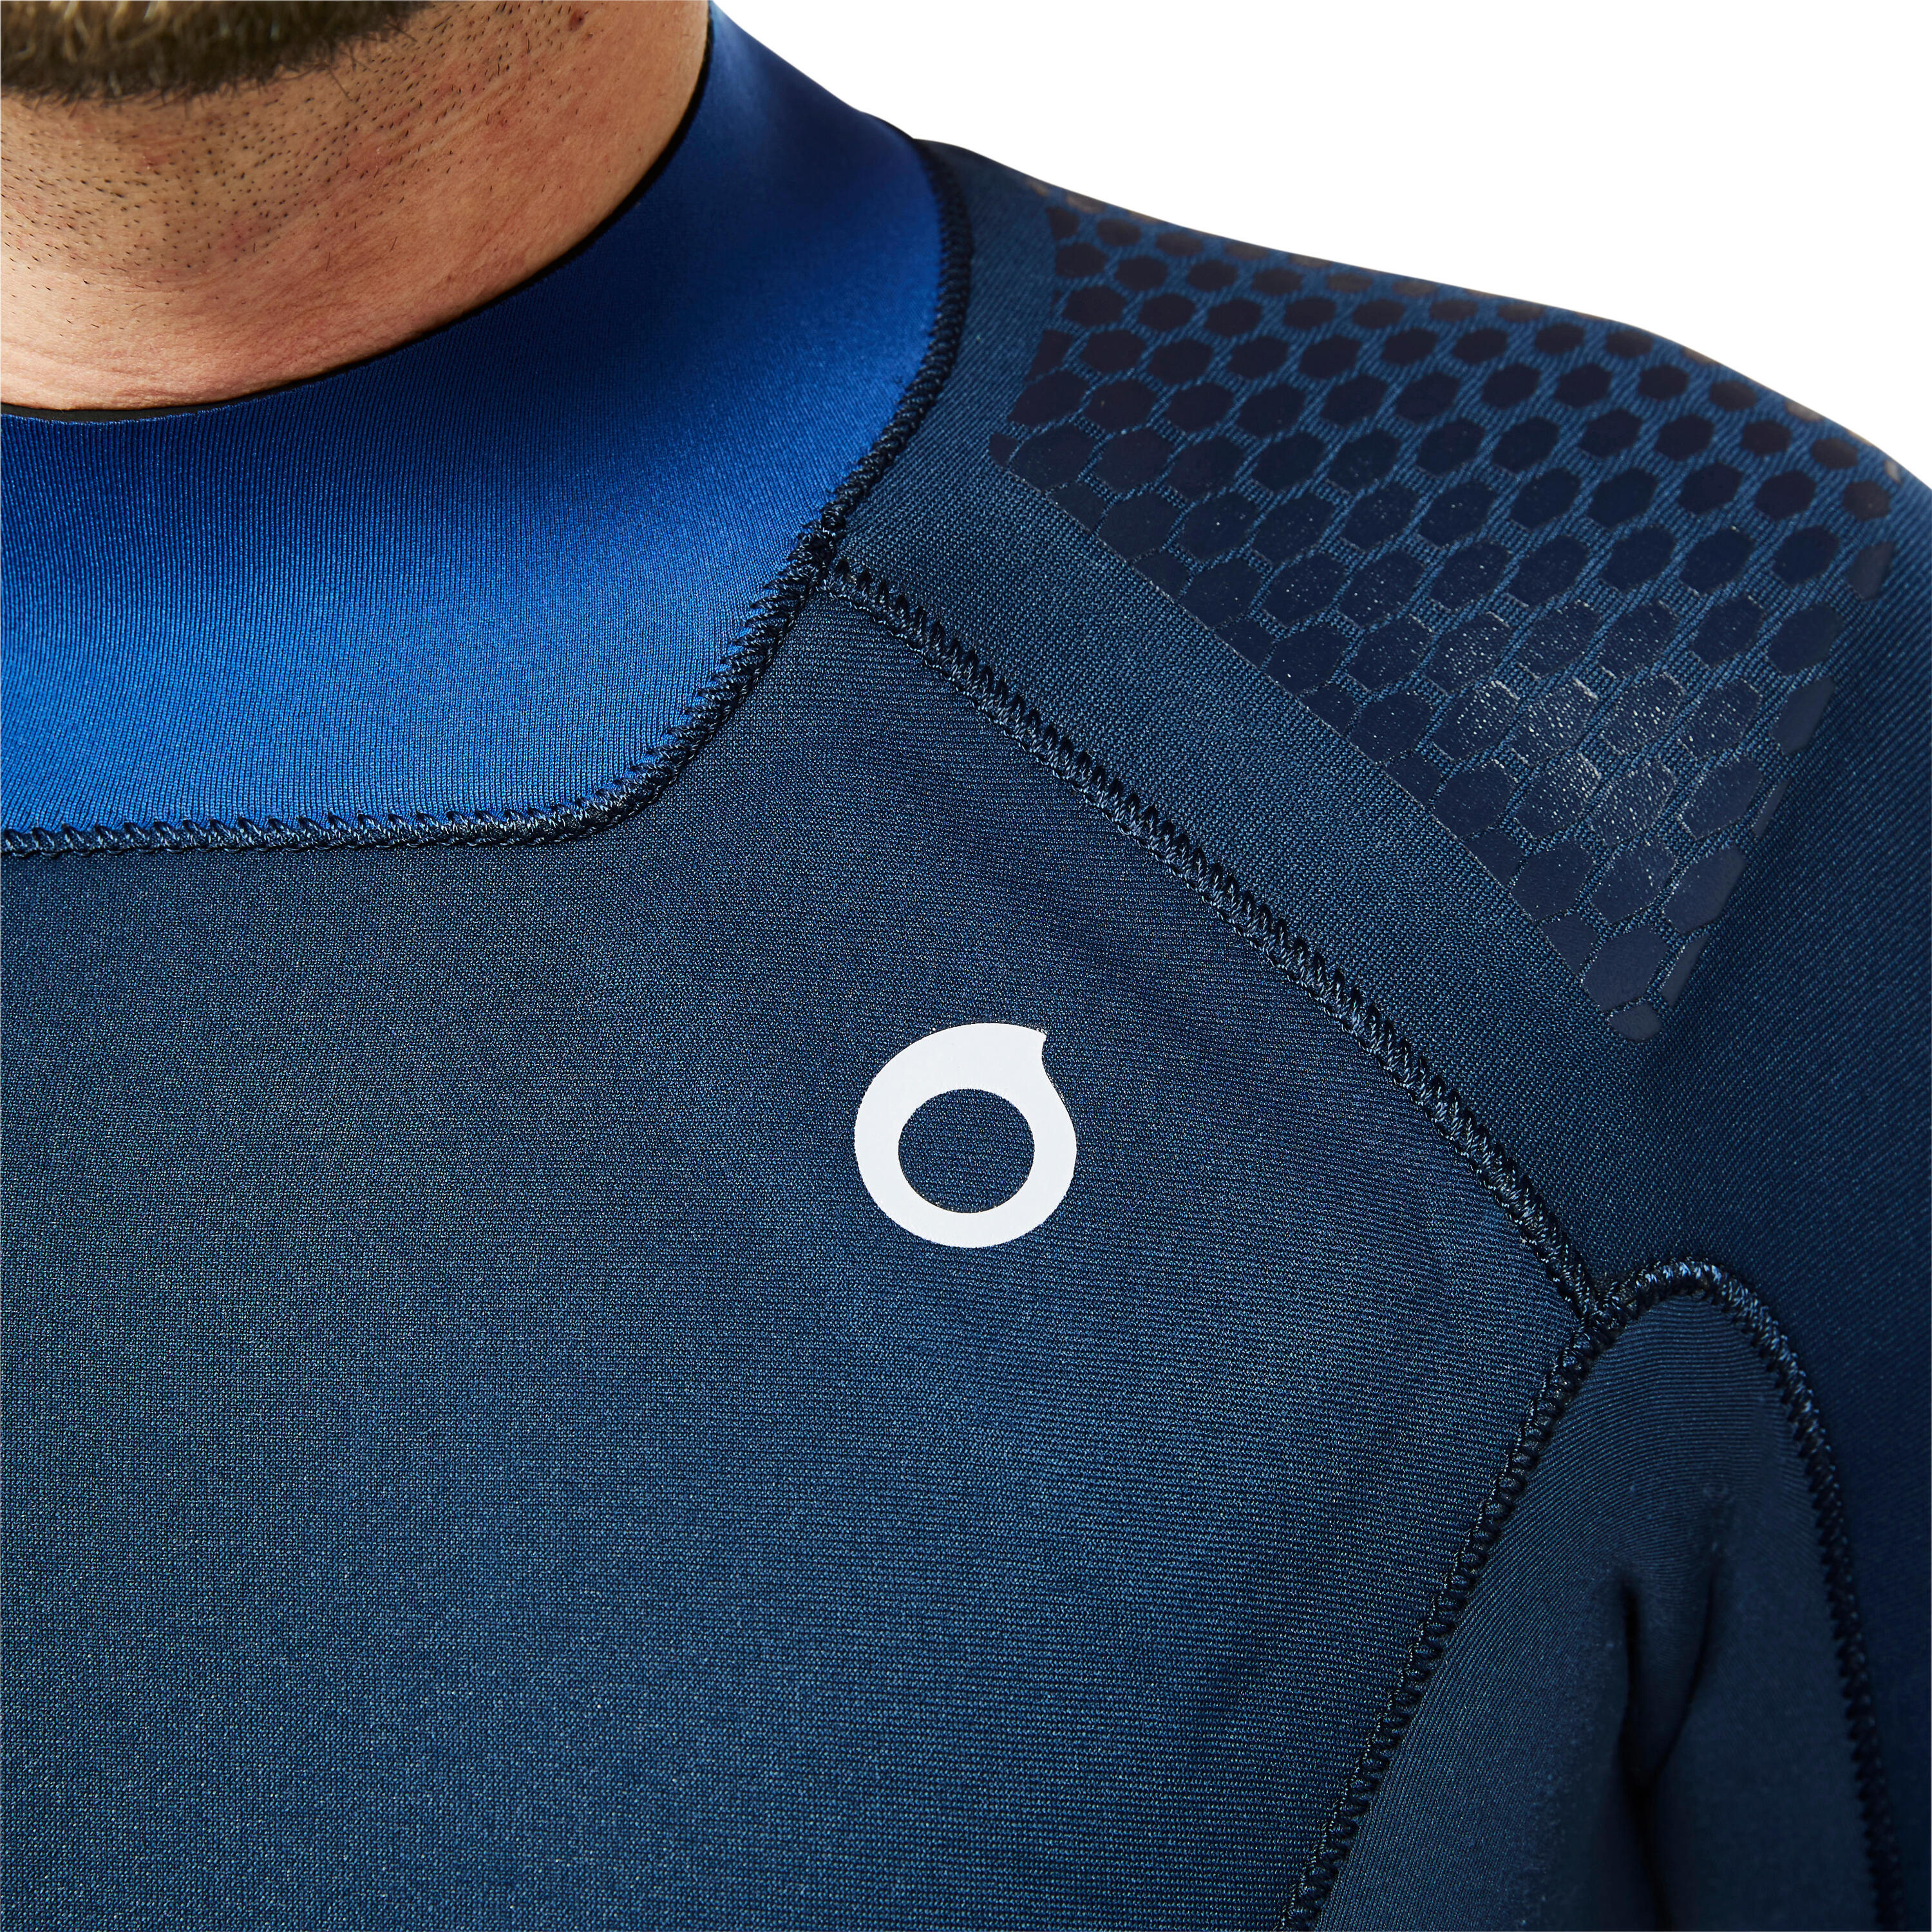 Men's diving wetsuit 3 mm neoprene SCD 900 turquin and overseas blue 5/10